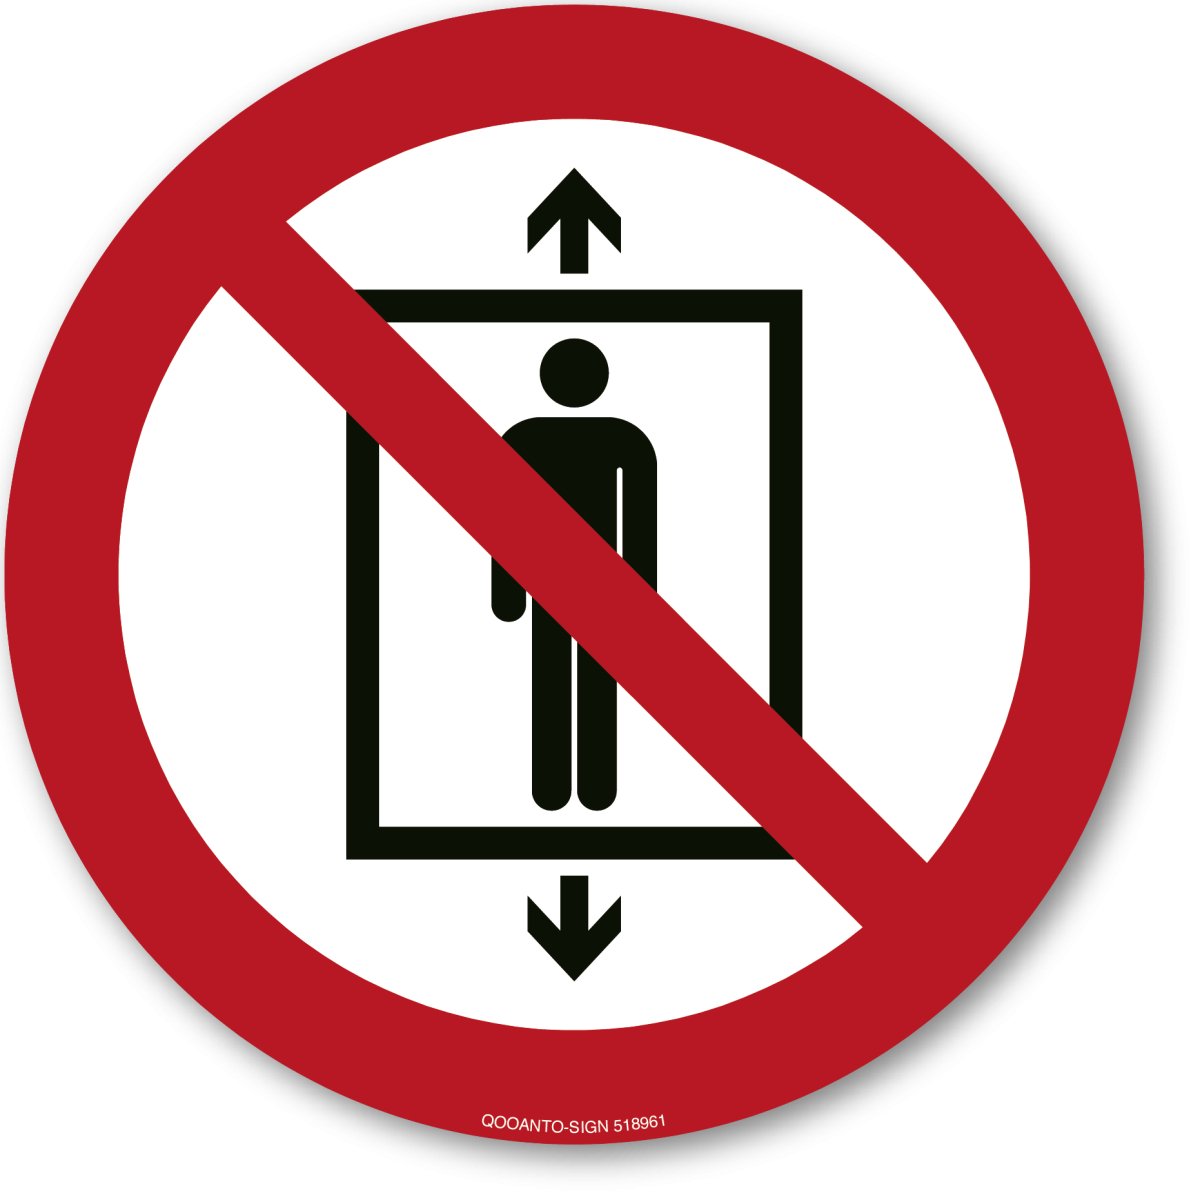 Personenbeförderung Verboten, EN ISO 7010, P027 Verbotsschild oder Aufkleber aus Alu-Verbund oder Selbstklebefolie mit UV-Schutz - QOOANTO-SIGN